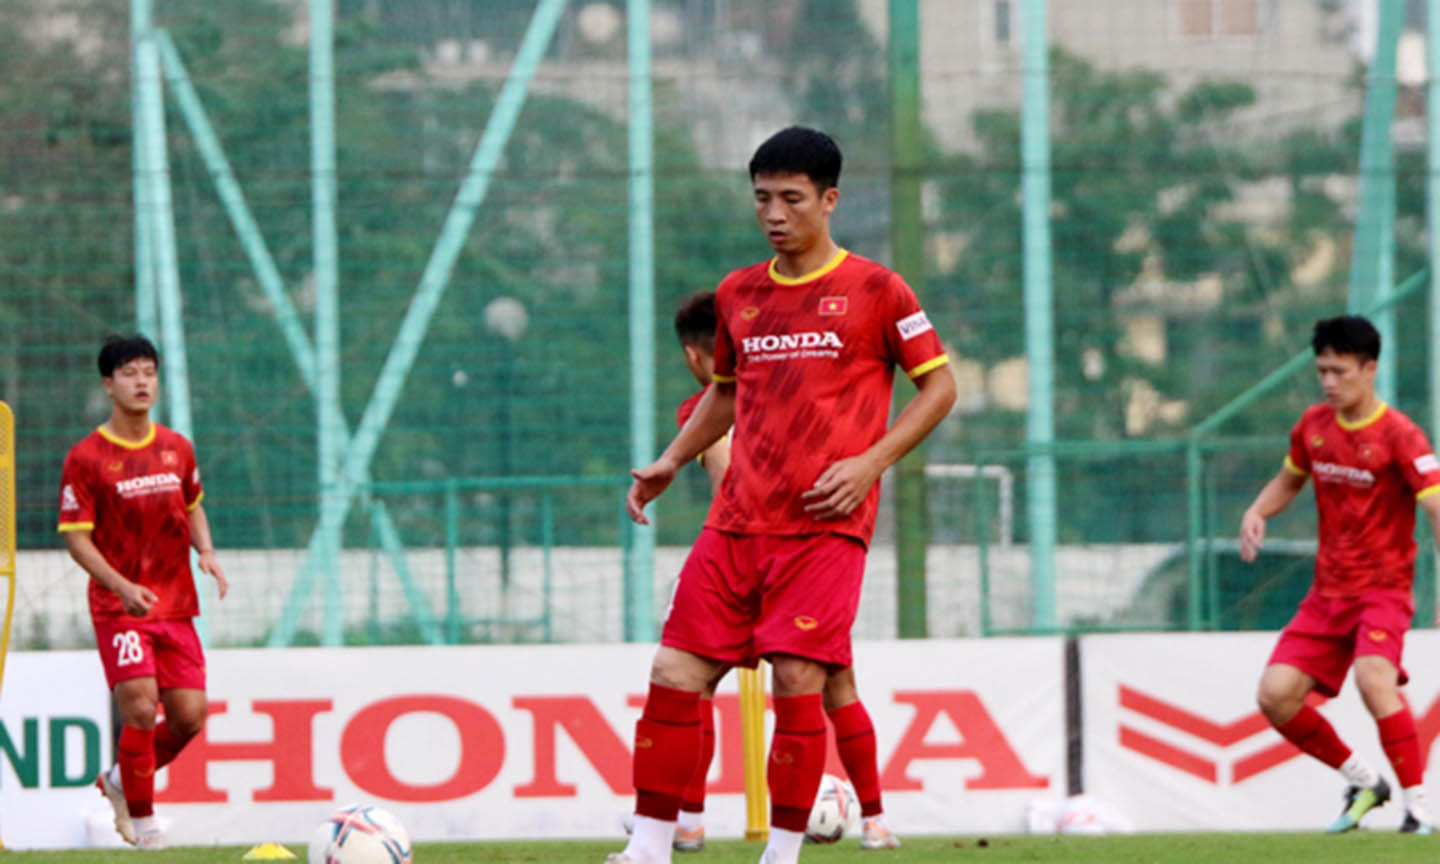 nhóm 7 cầu thủ thuộc CLB Hà Nội và 3 cầu thủ thuộc CLB Topenland Bình Định sẽ lên tập trung cùng đội tuyển sau khi kết thúc trận chung kết Cúp quốc gia 2022